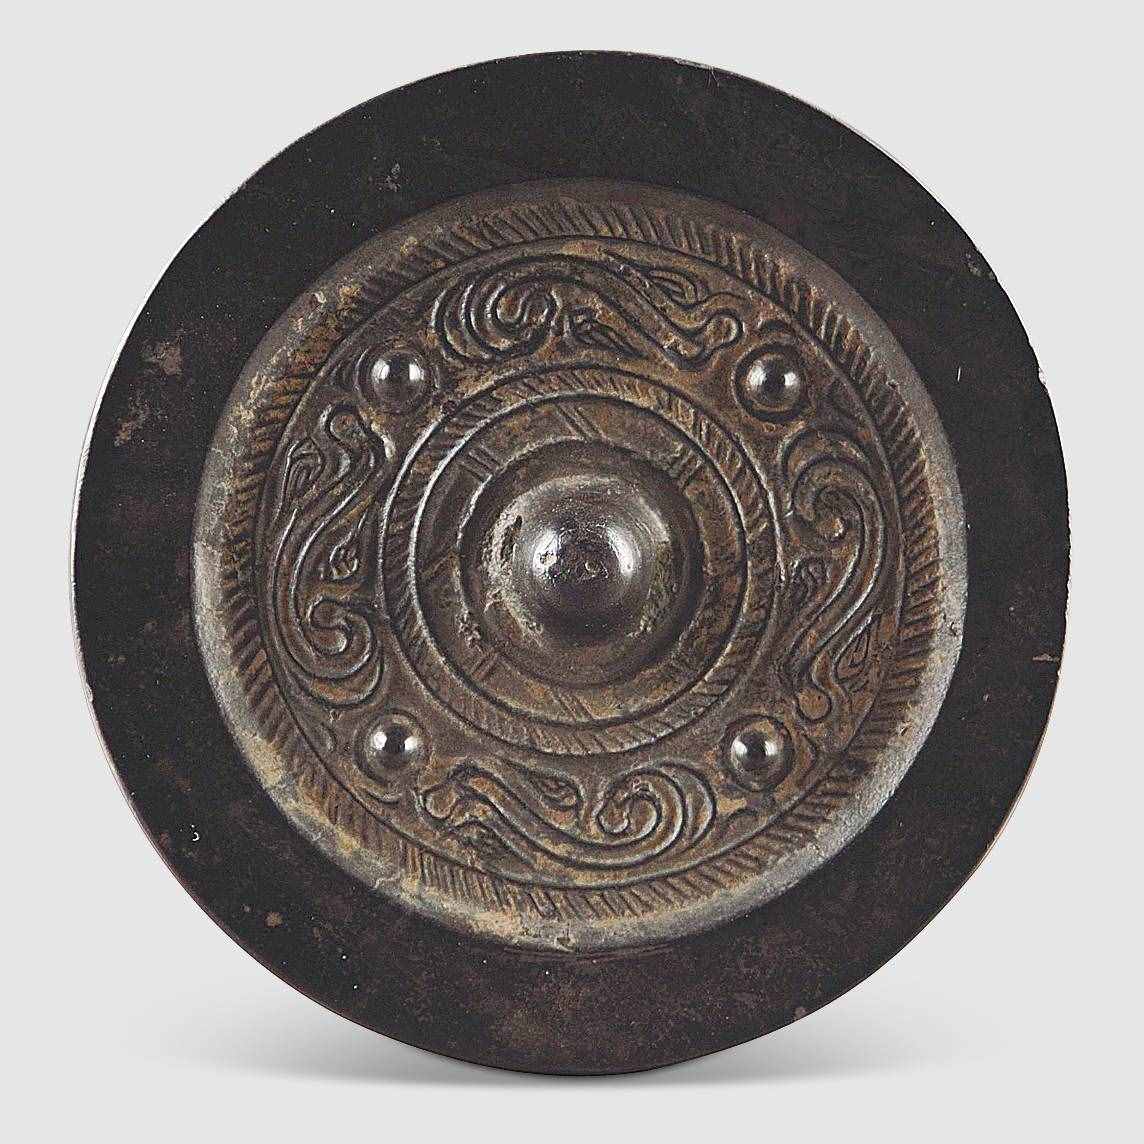 许昌博物馆珍藏汉镜 解读汉代铜镜的四个时期